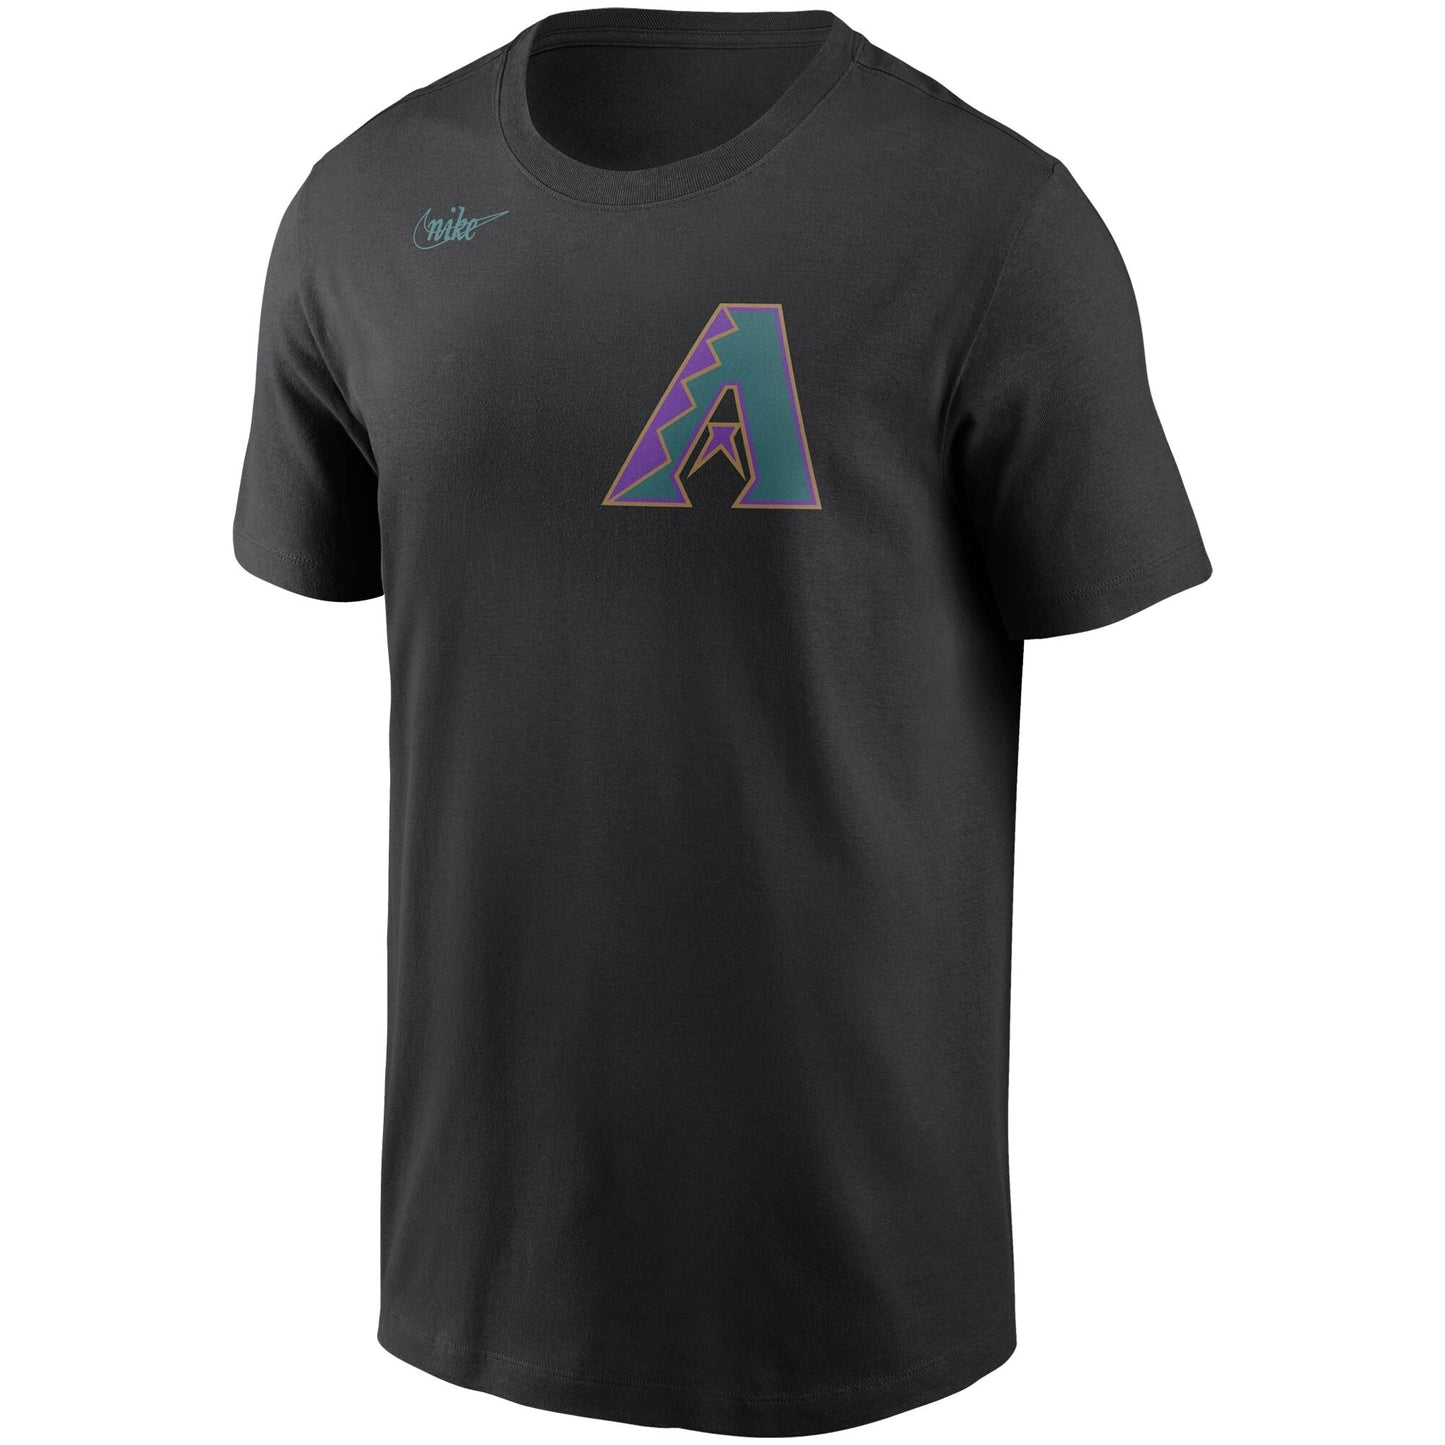 Men's Randy Johnson Arizona Diamondbacks Nike Cooperstown Collection Name & Number T-Shirt - Black